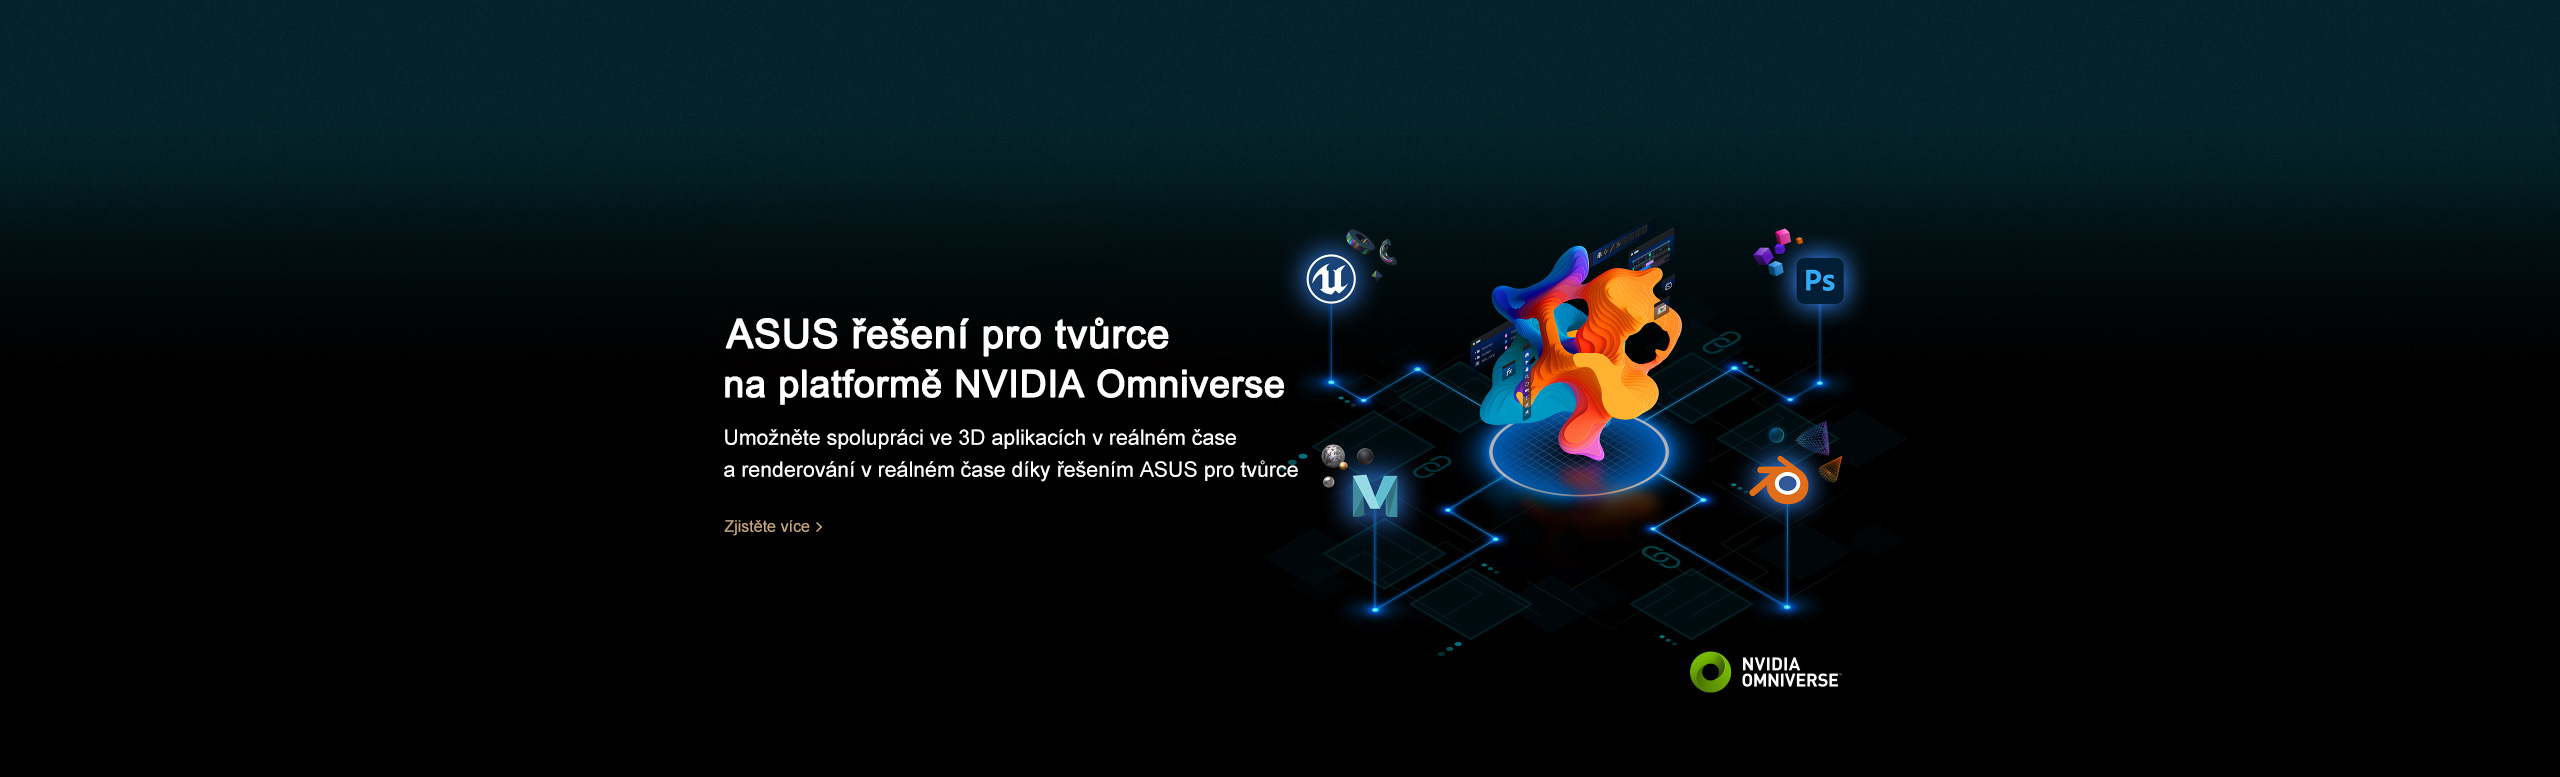 Další informace o zařízeních ProArt a platformě NVIDIA Omniverse